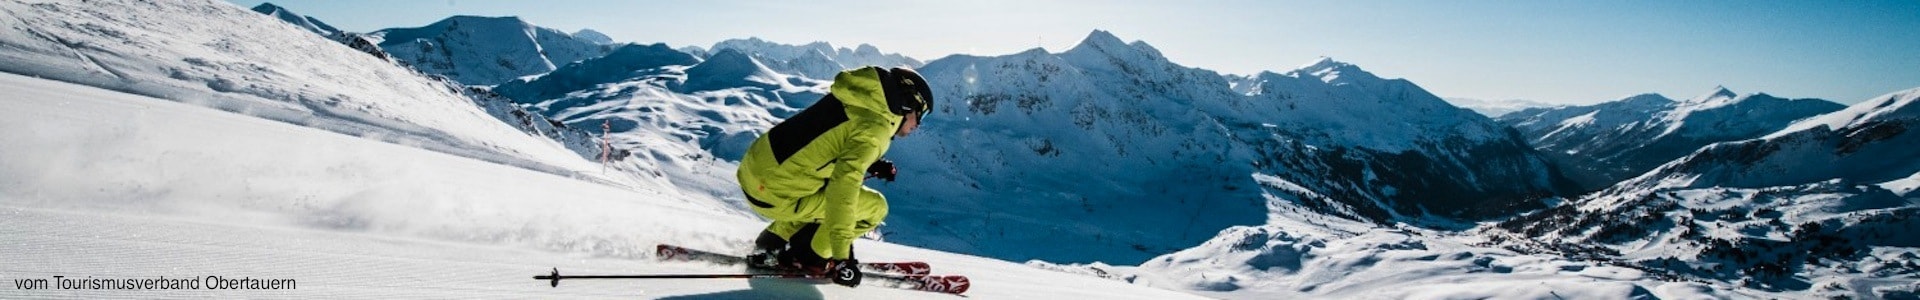 gay Skireise in den österreichischen Alpen, Obertauern